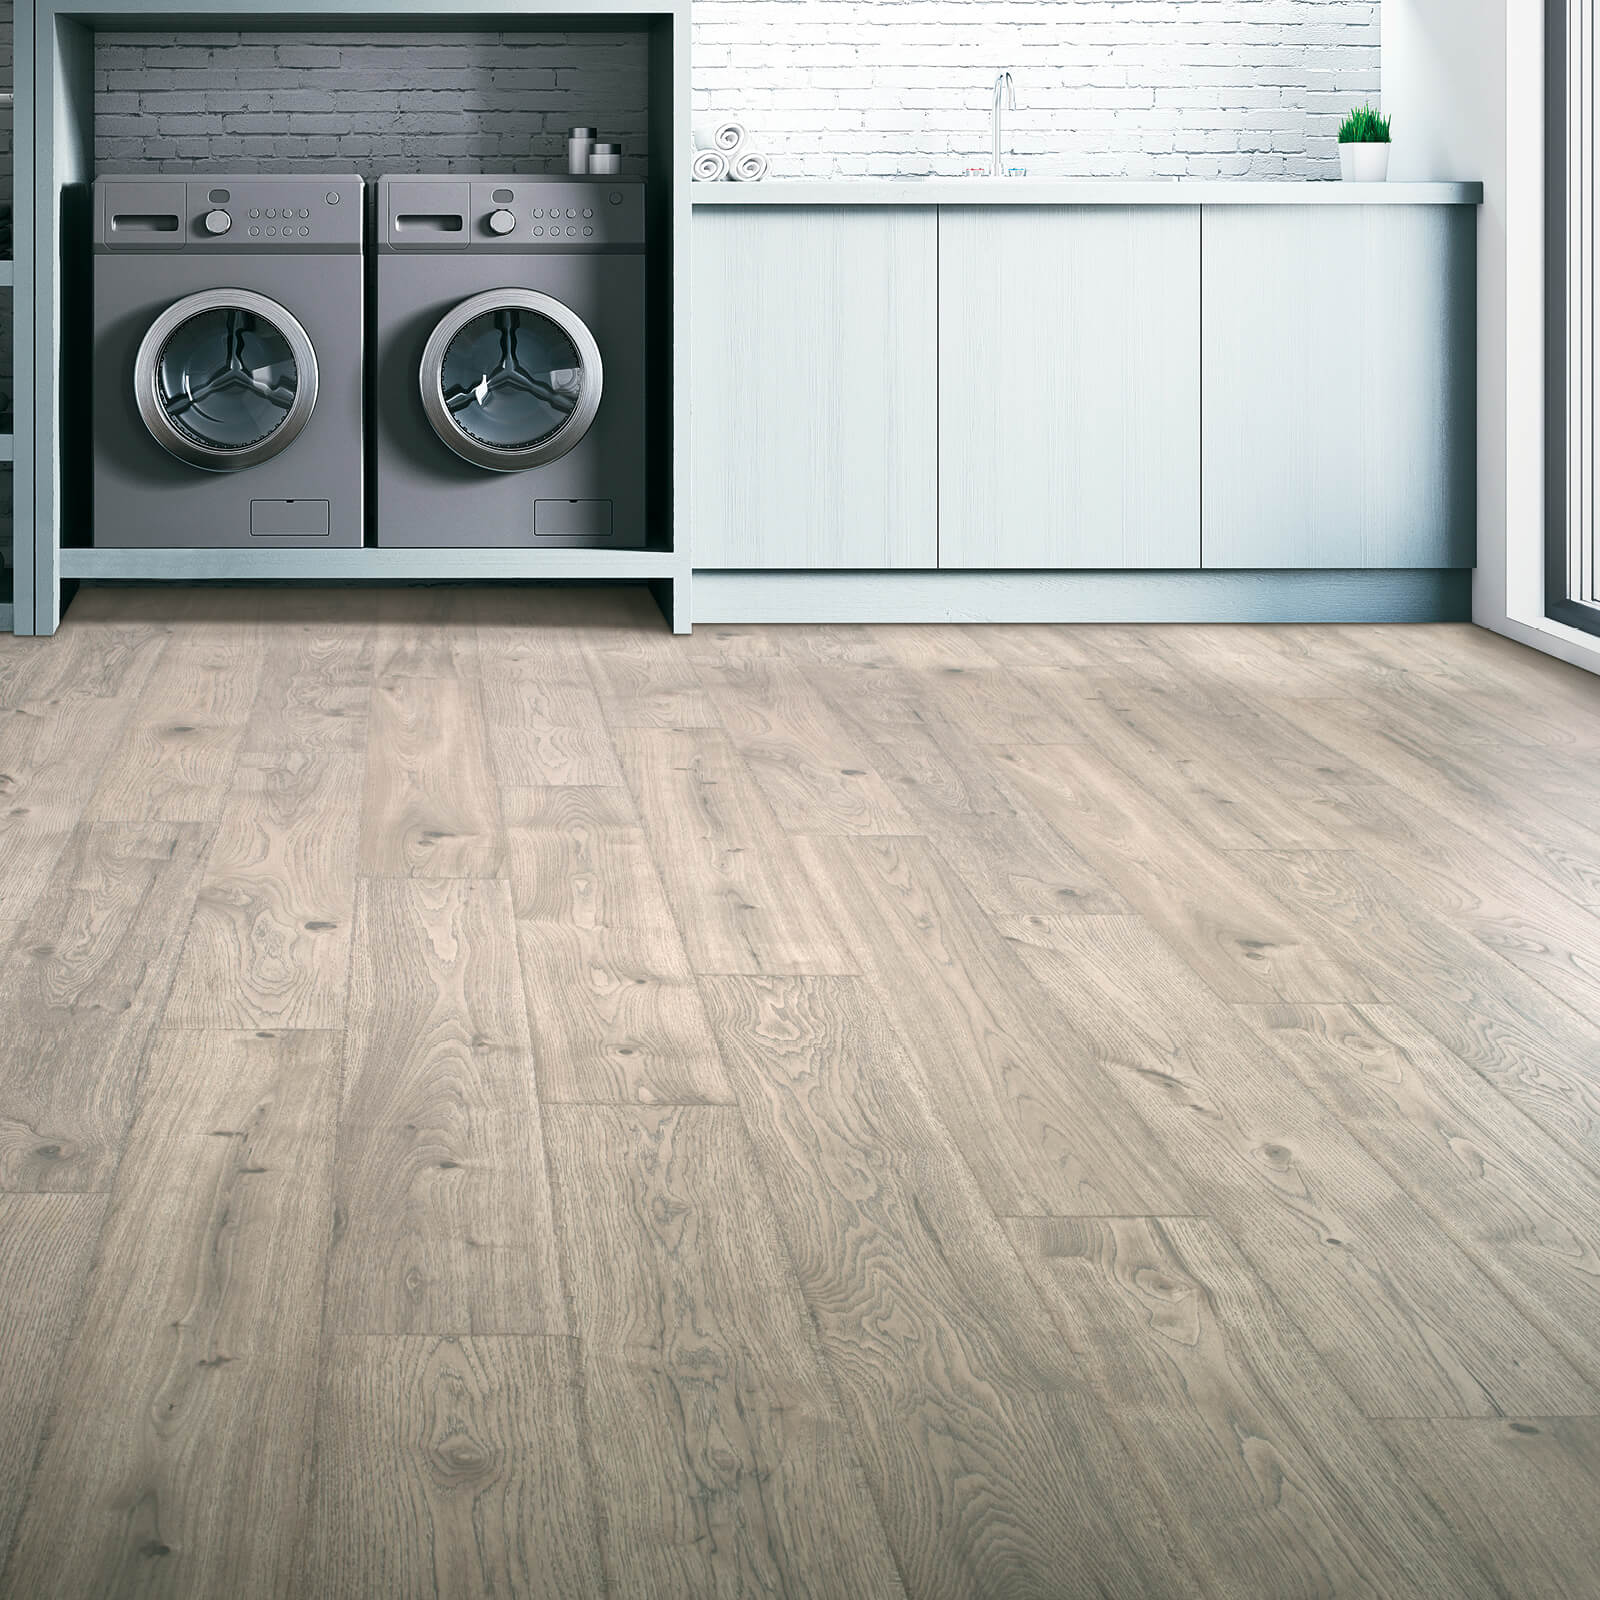 Wood-look laminate flooring in laundry room | Floorco Premium